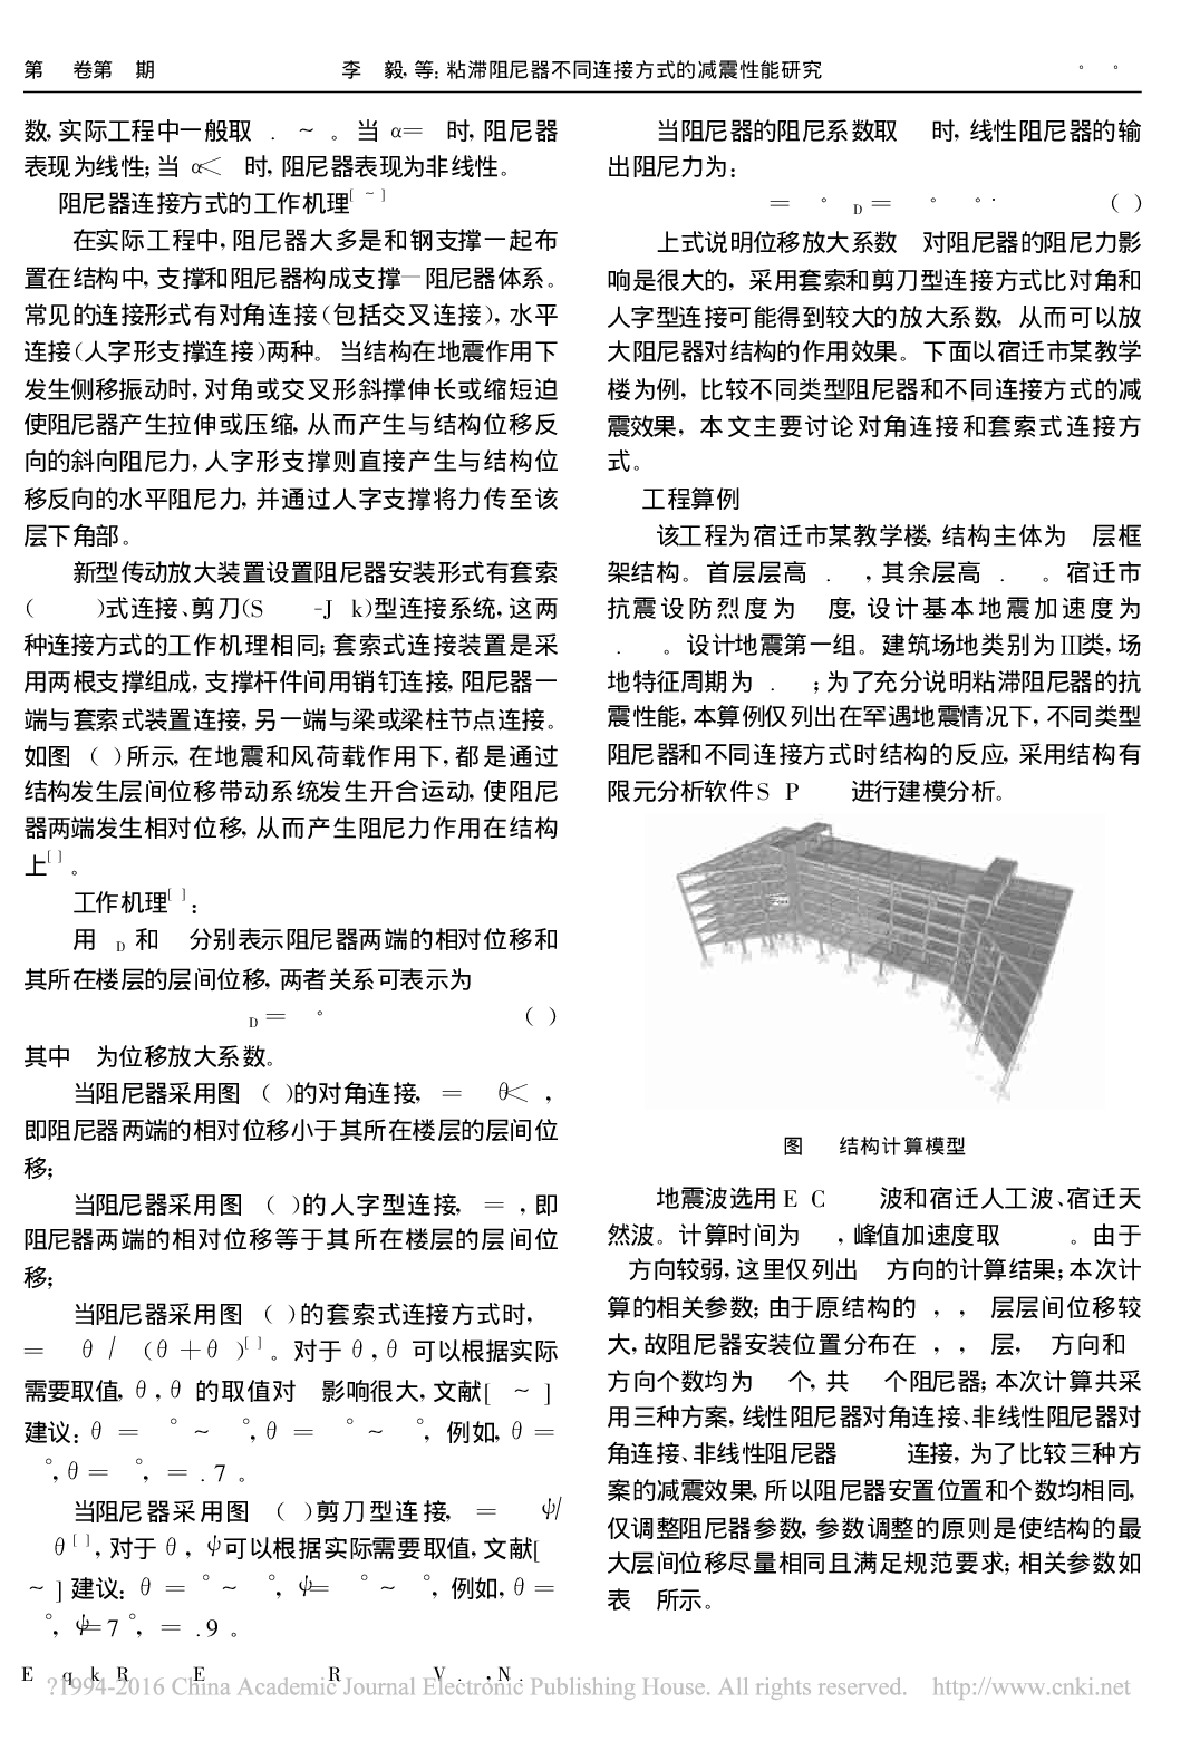 粘滞阻尼器不同连接方式的减震性能研究_李毅-图二